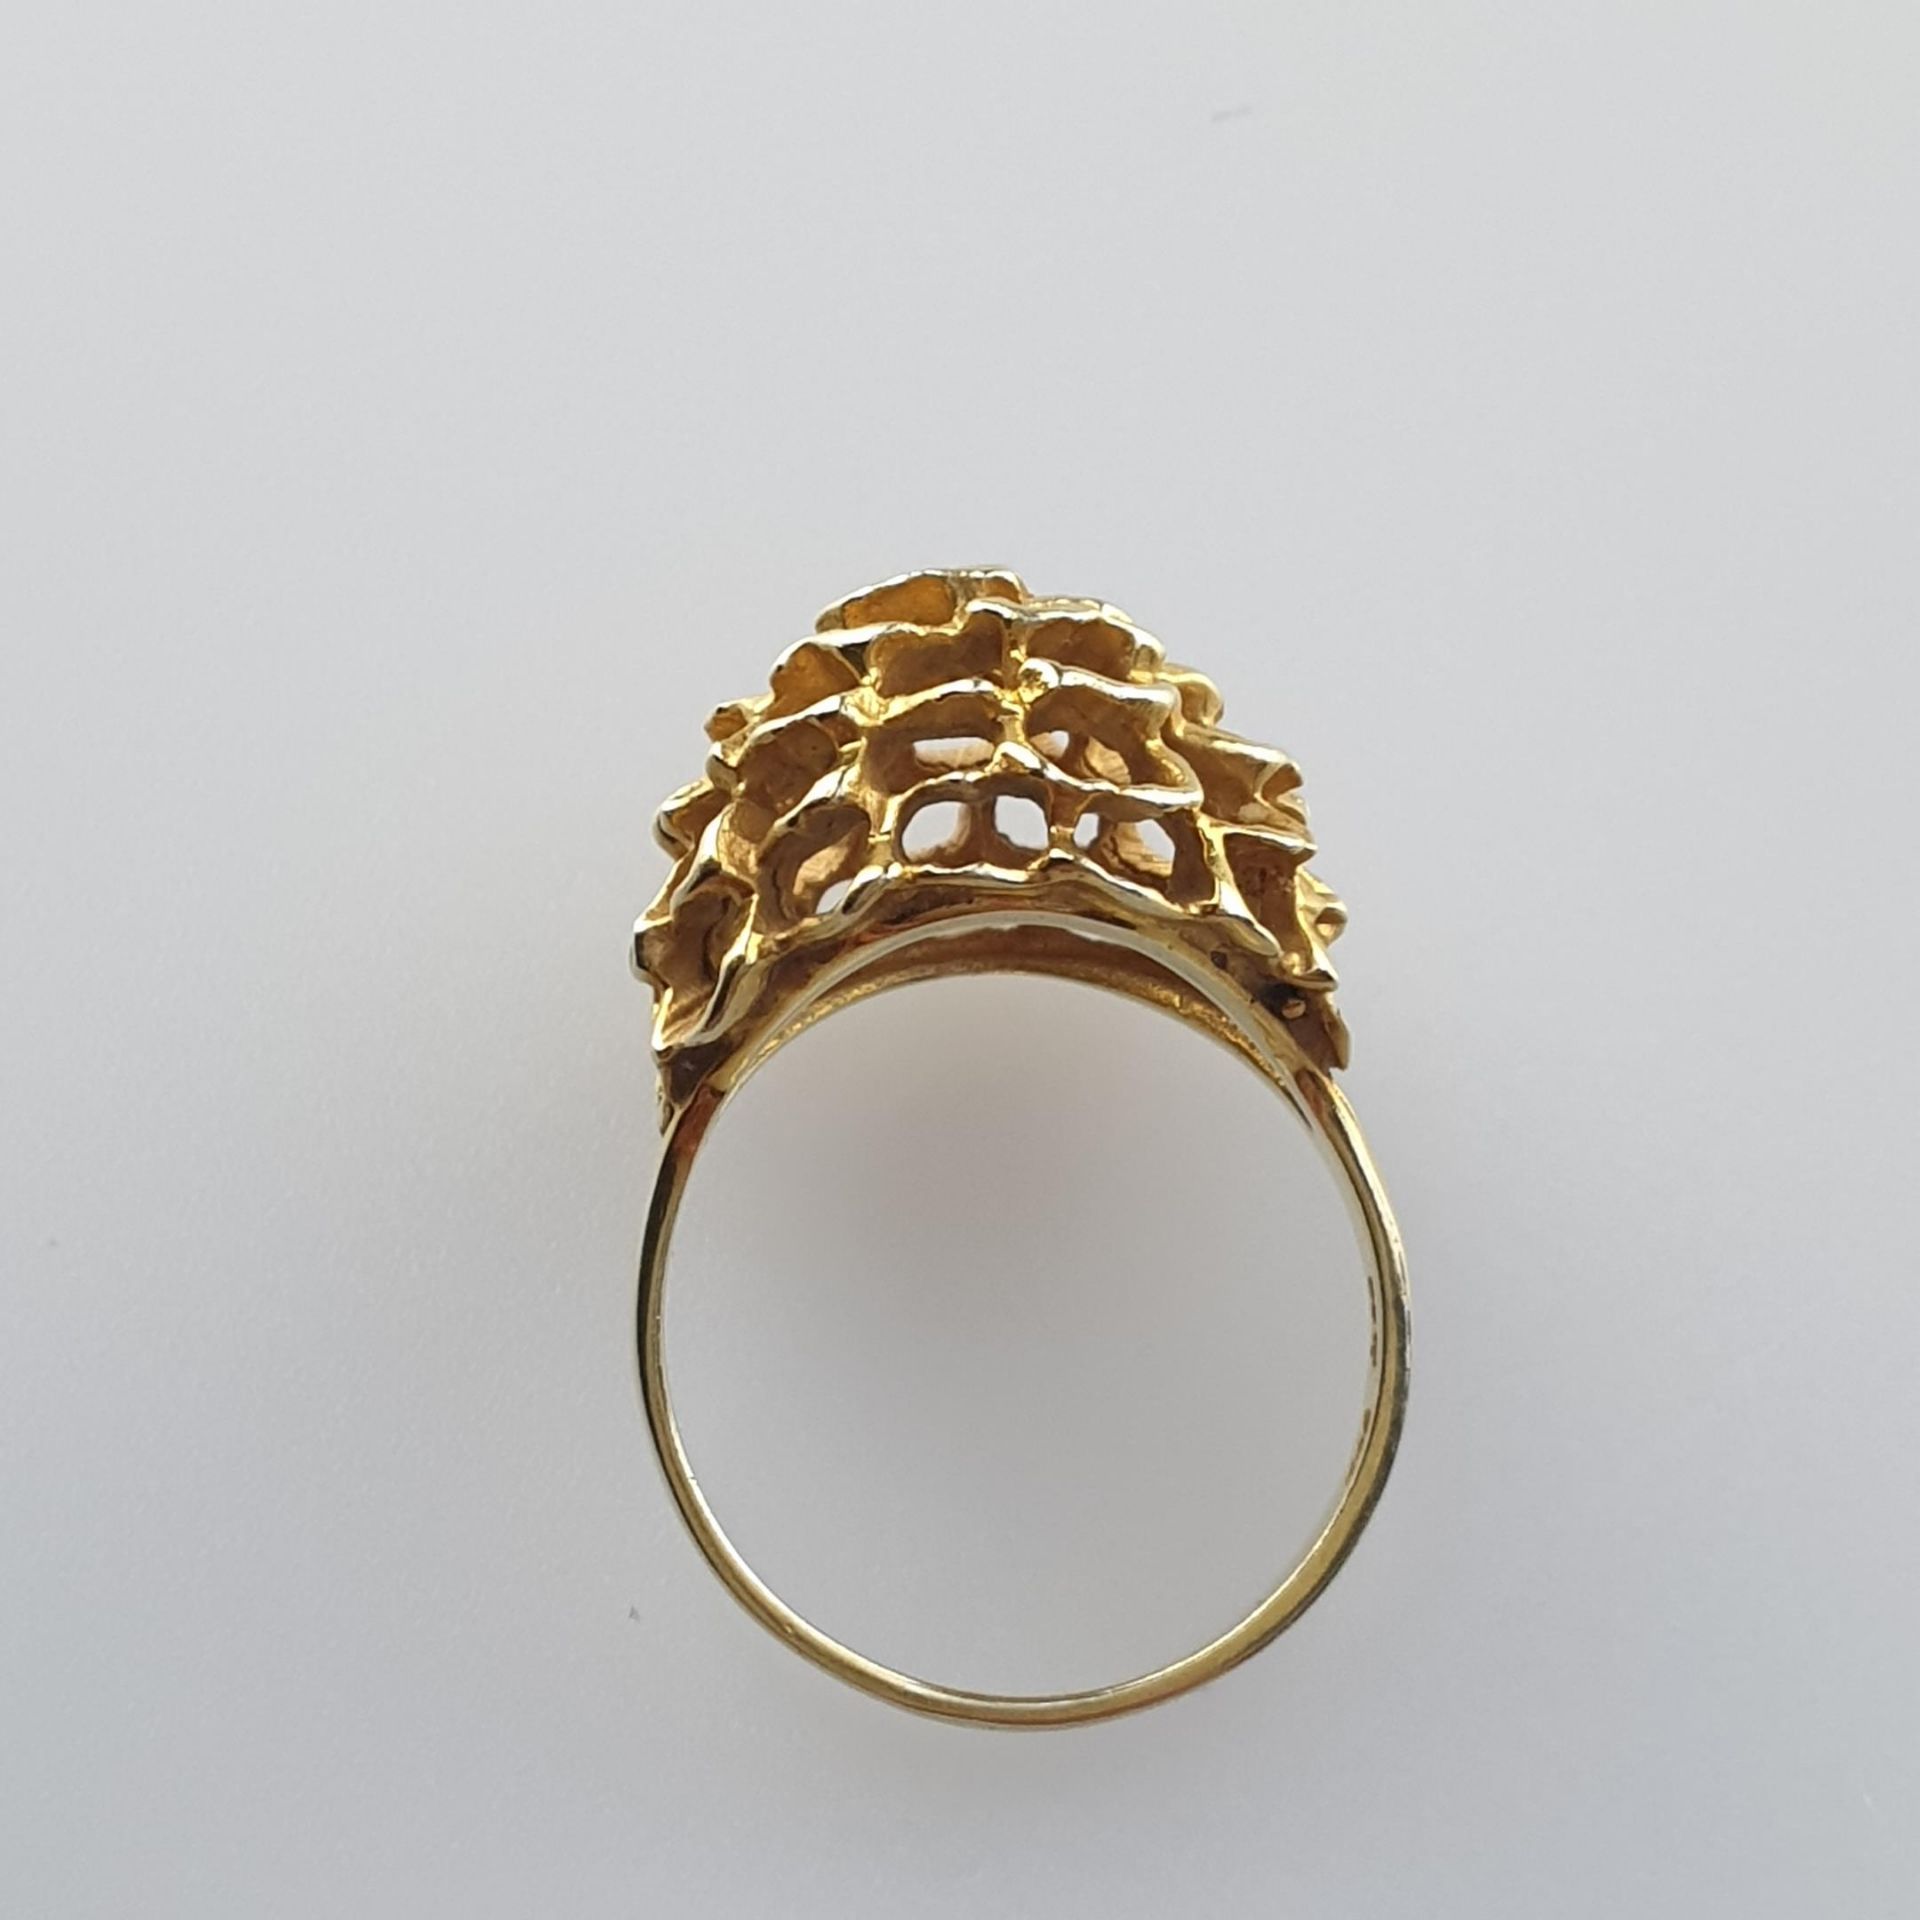 Blütenring - 585er Gelbgold, gestempelt, kuppelförmiger Ringkopf blütenförmig durchbrochen, ca.4,6g, - Bild 4 aus 5